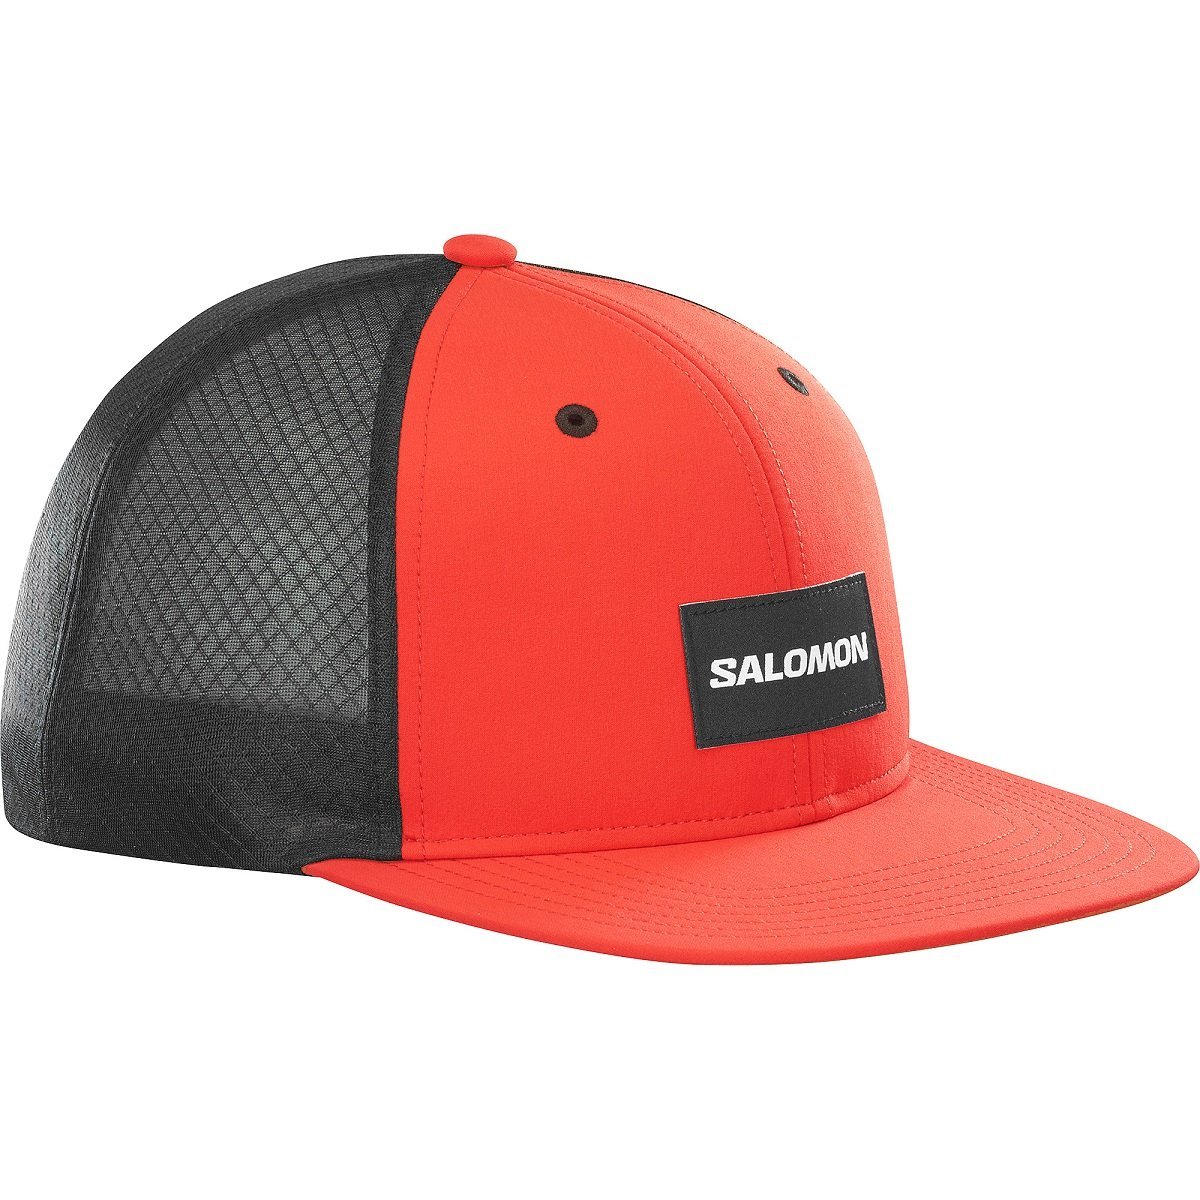 Salomon Trucker Flat Cap - červená/čierna